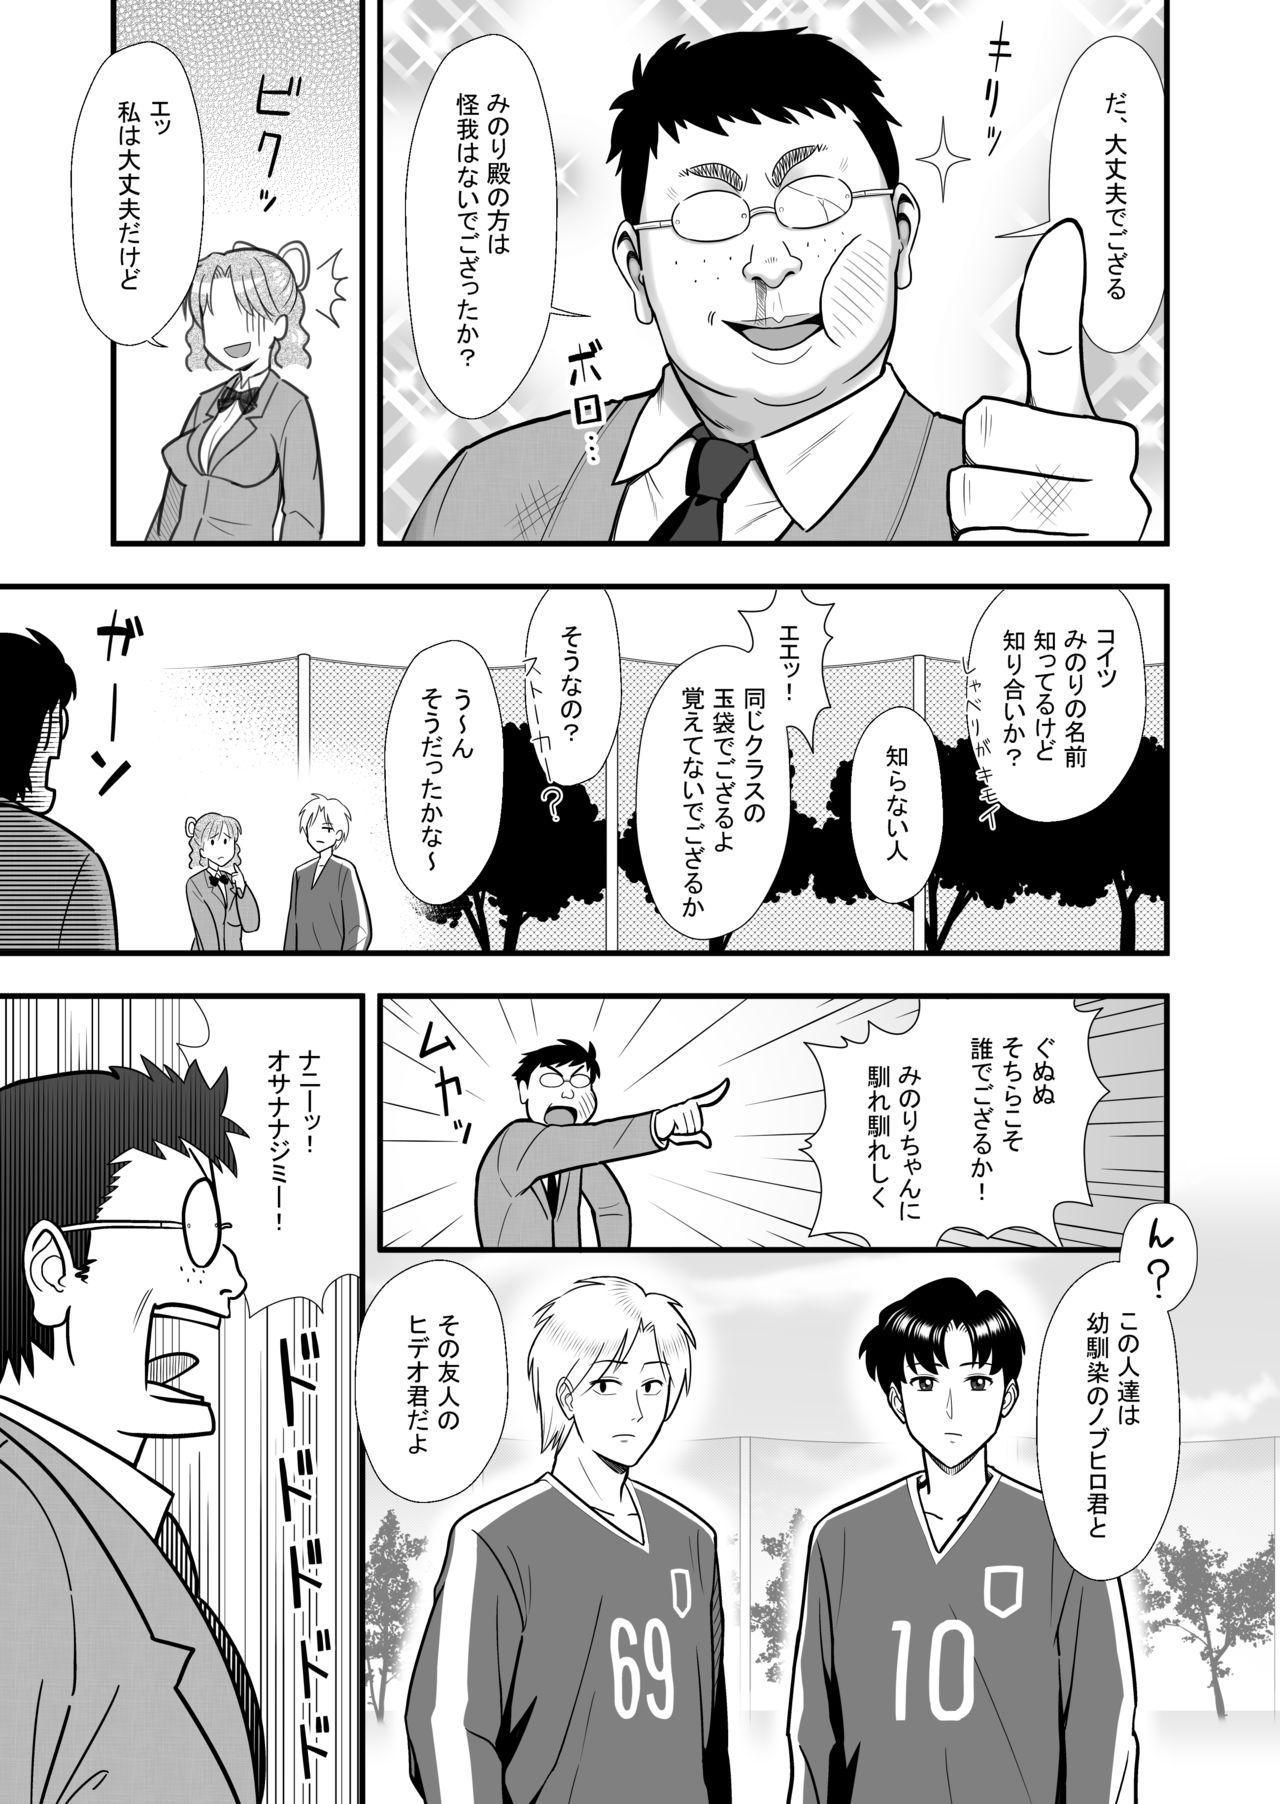 Orgia Omoibito no Shoutai wa Henshin Nouryoku o Te ni Ireta Kimoota datta! - Original Fun - Page 5